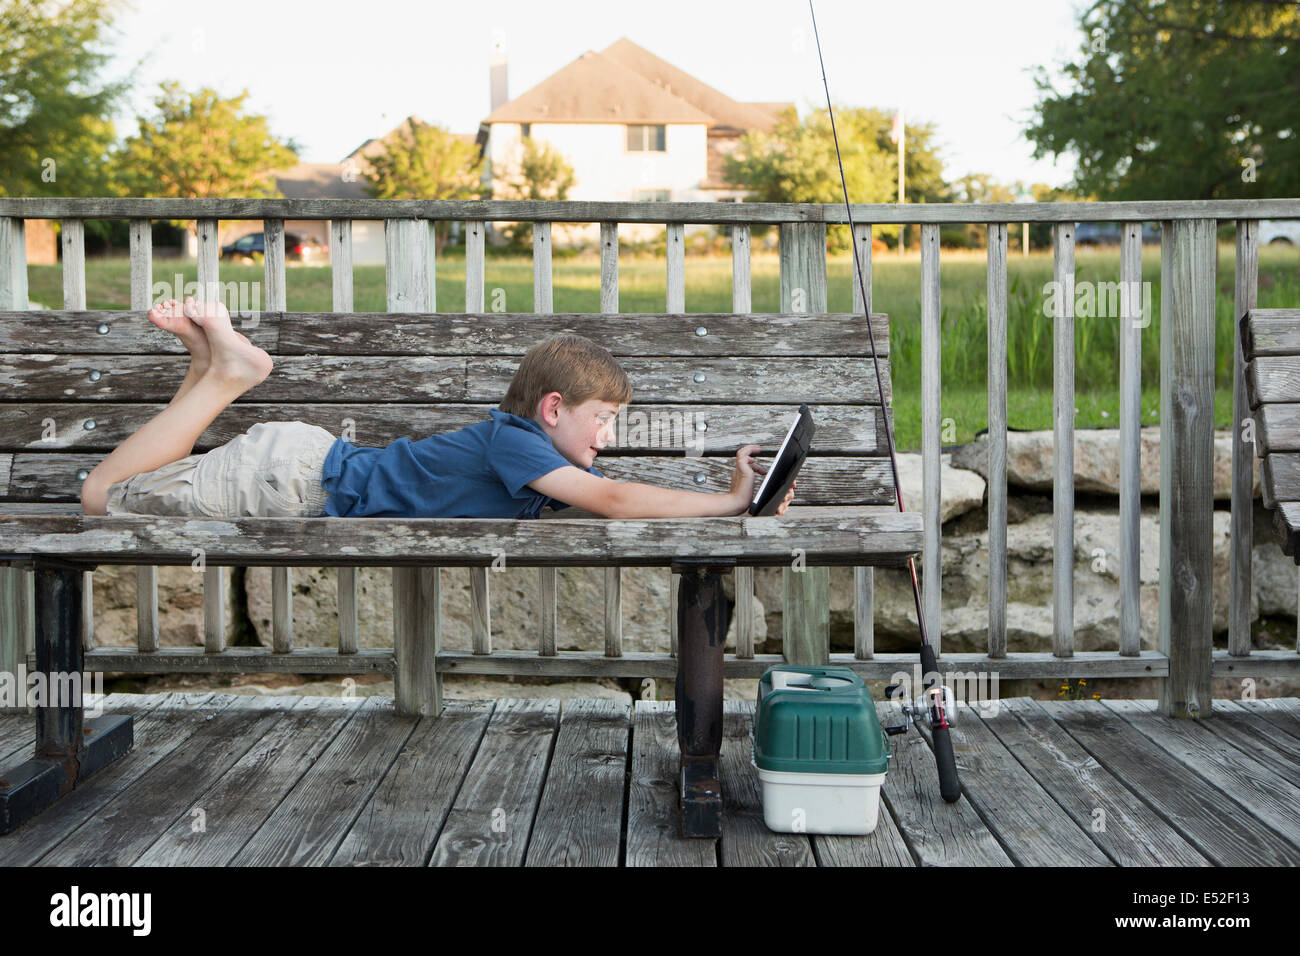 Un jeune garçon allongé sur un banc à l'extérieur à l'aide d'une tablette numérique. du matériel de pêche. Banque D'Images